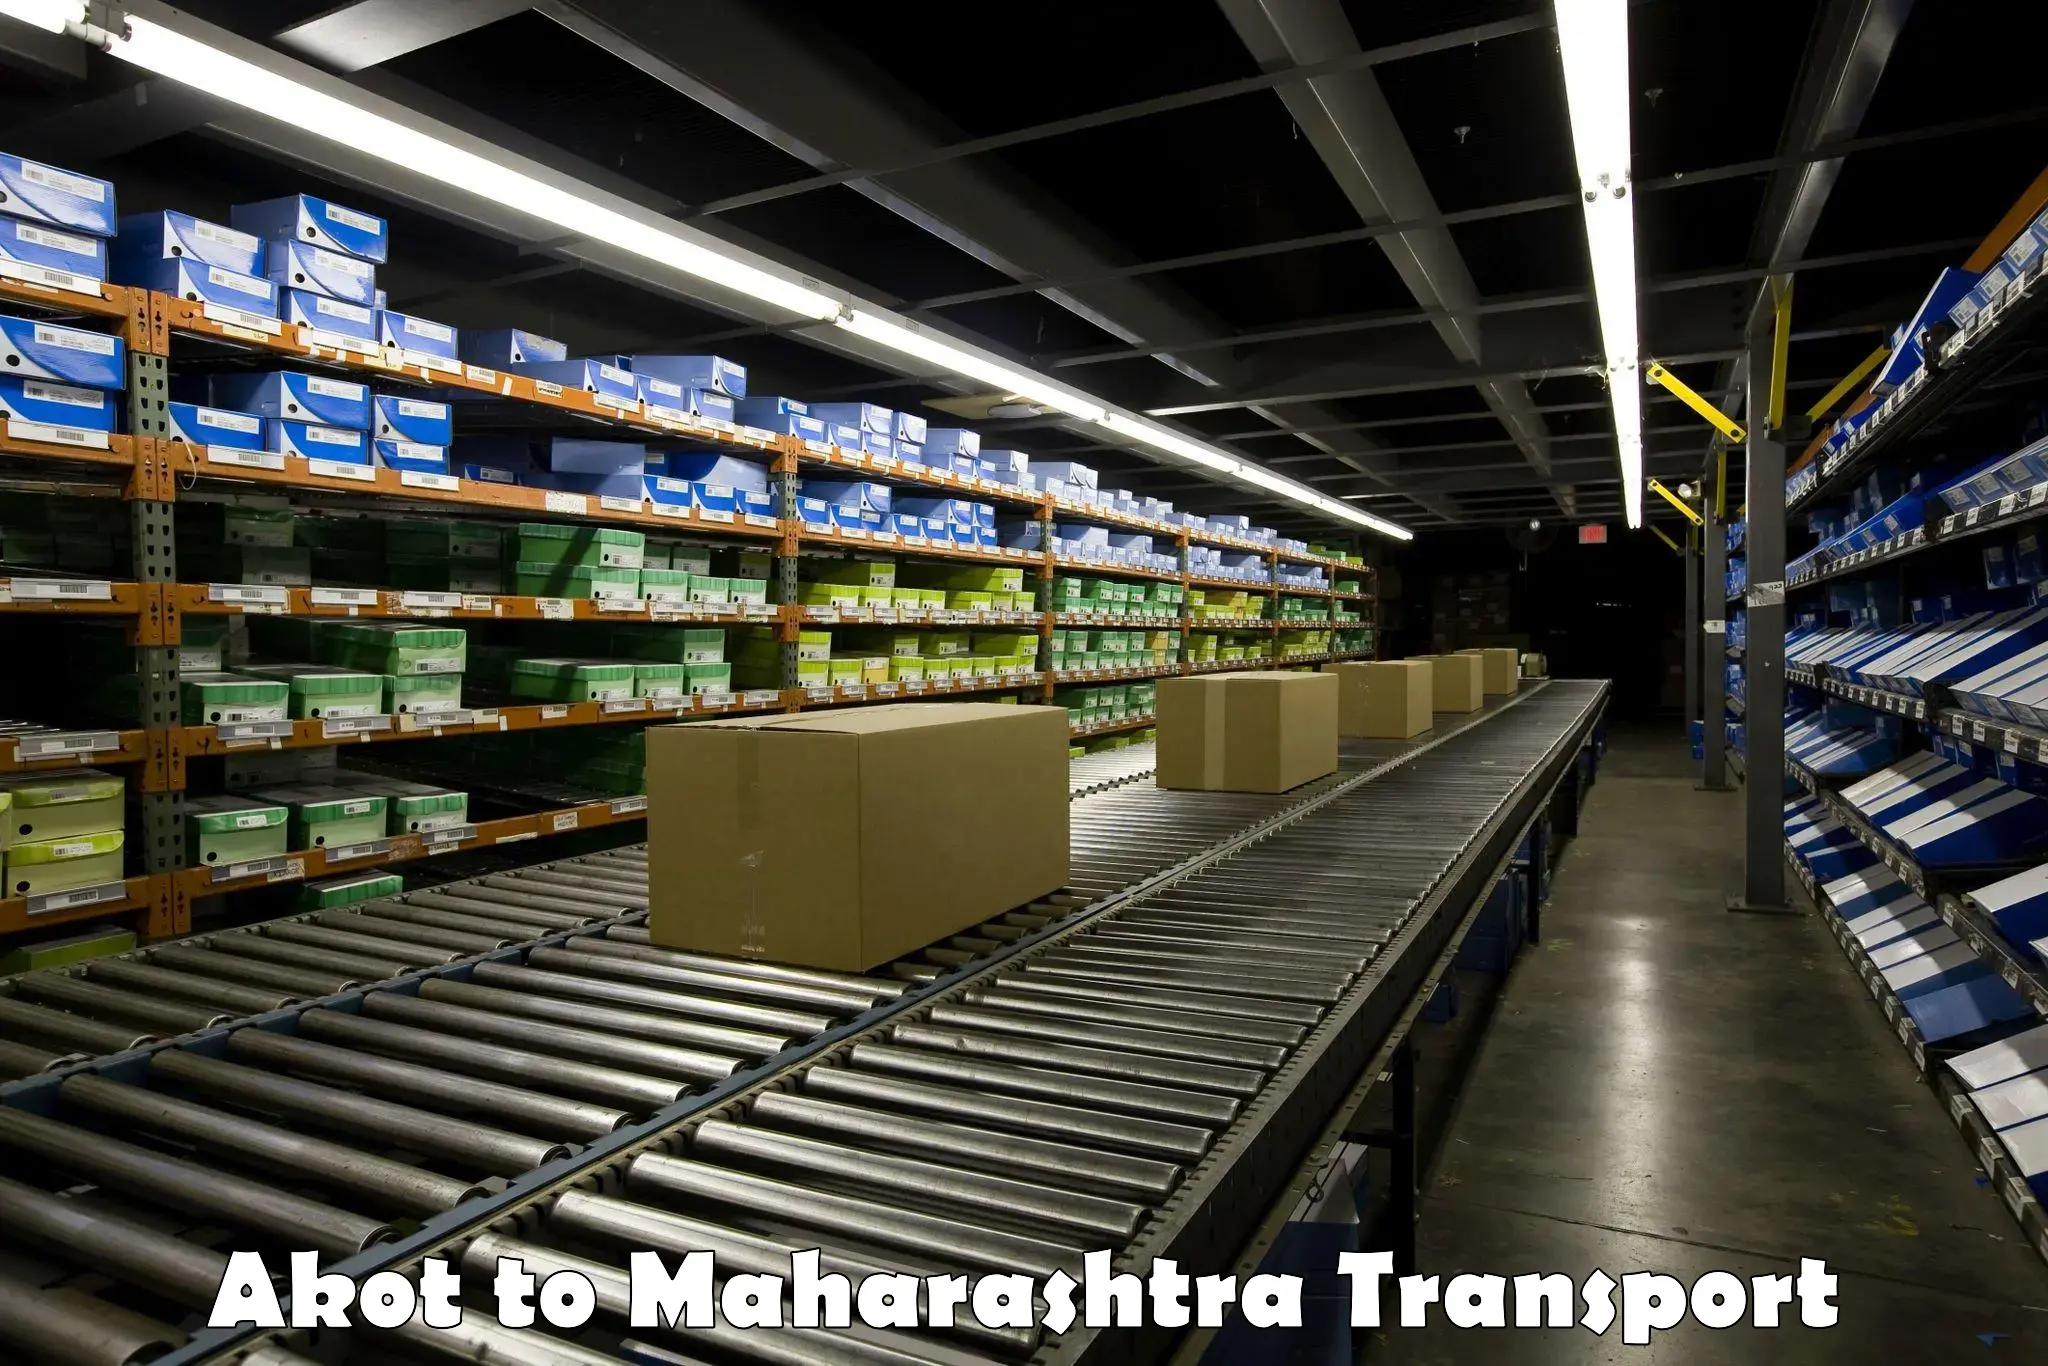 Truck transport companies in India Akot to Maharashtra